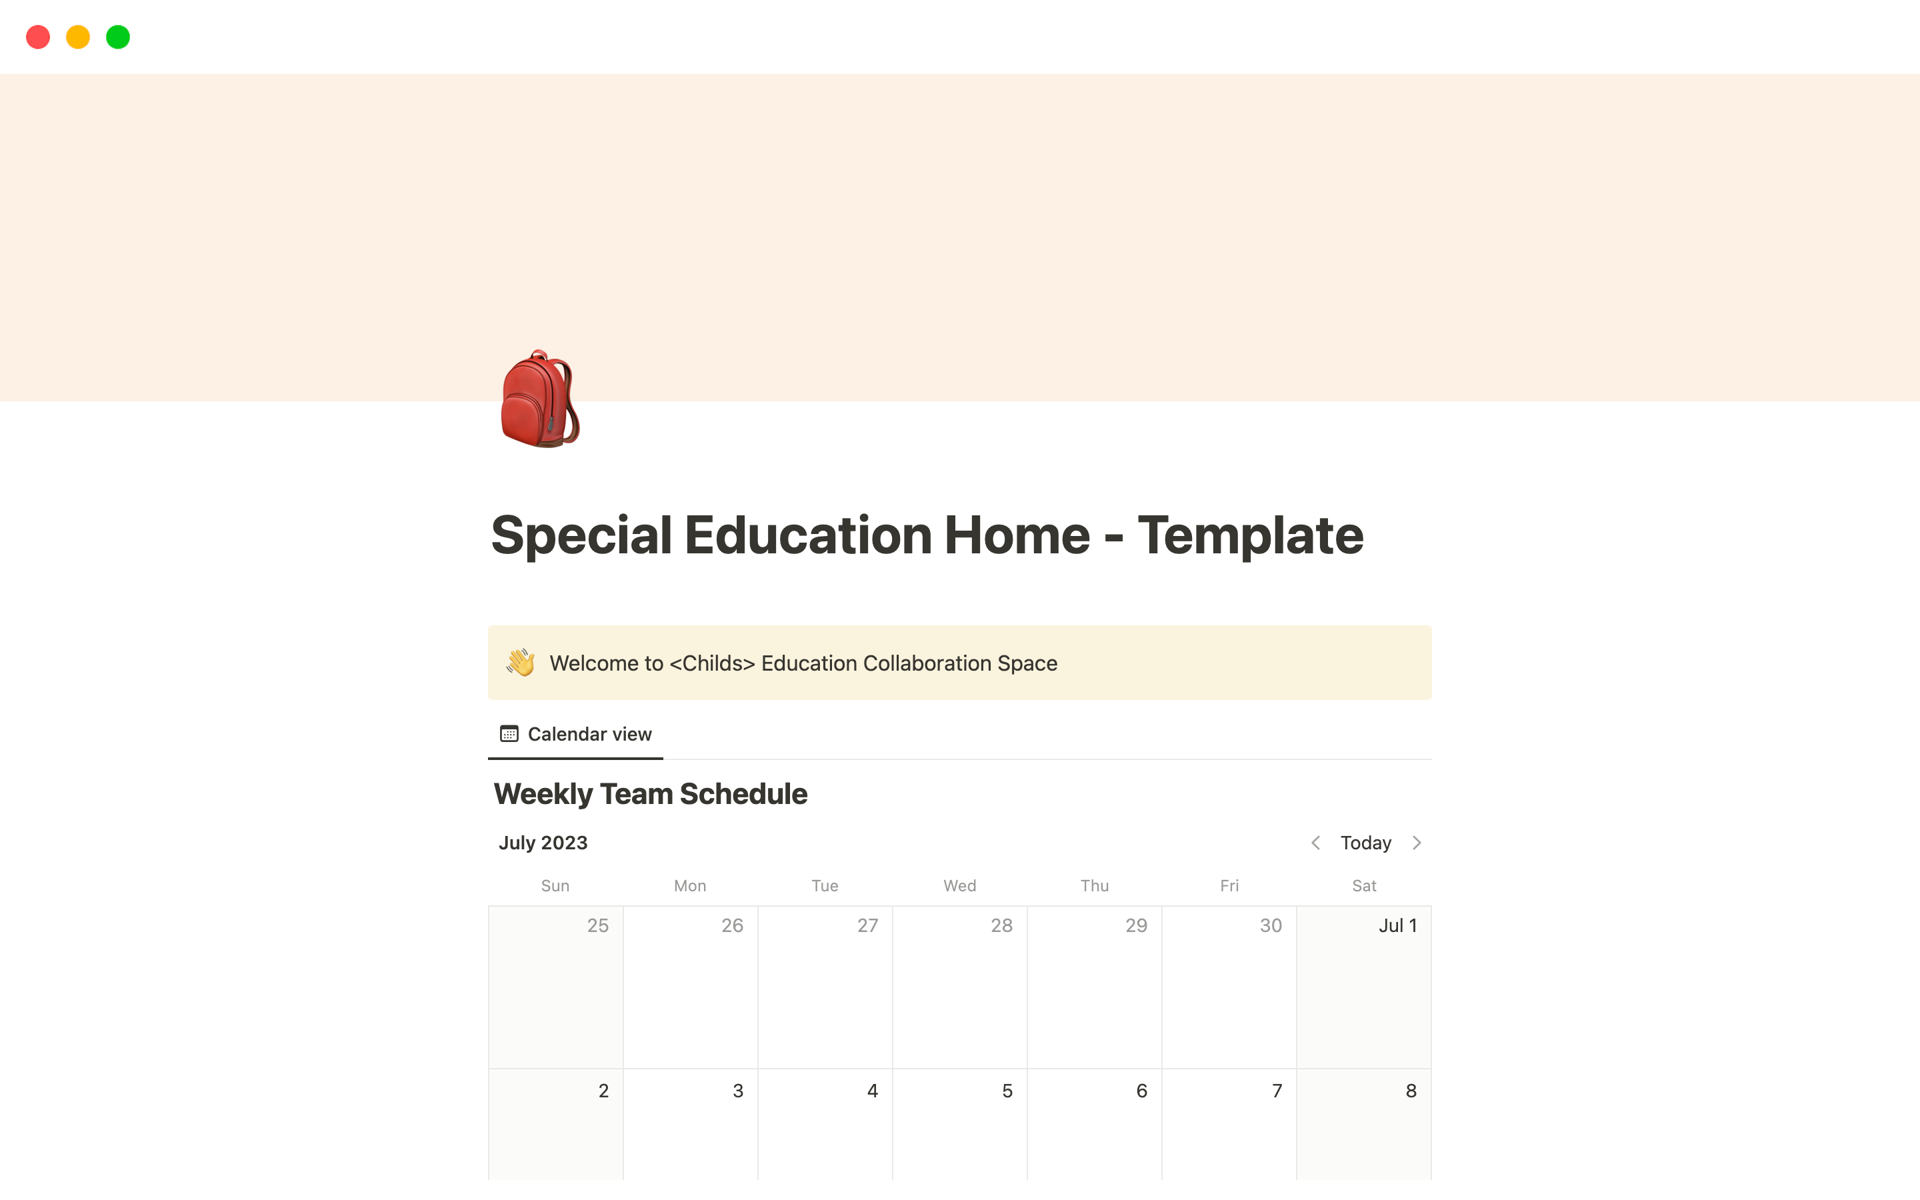 Uma prévia do modelo para Special Education Home - Template 